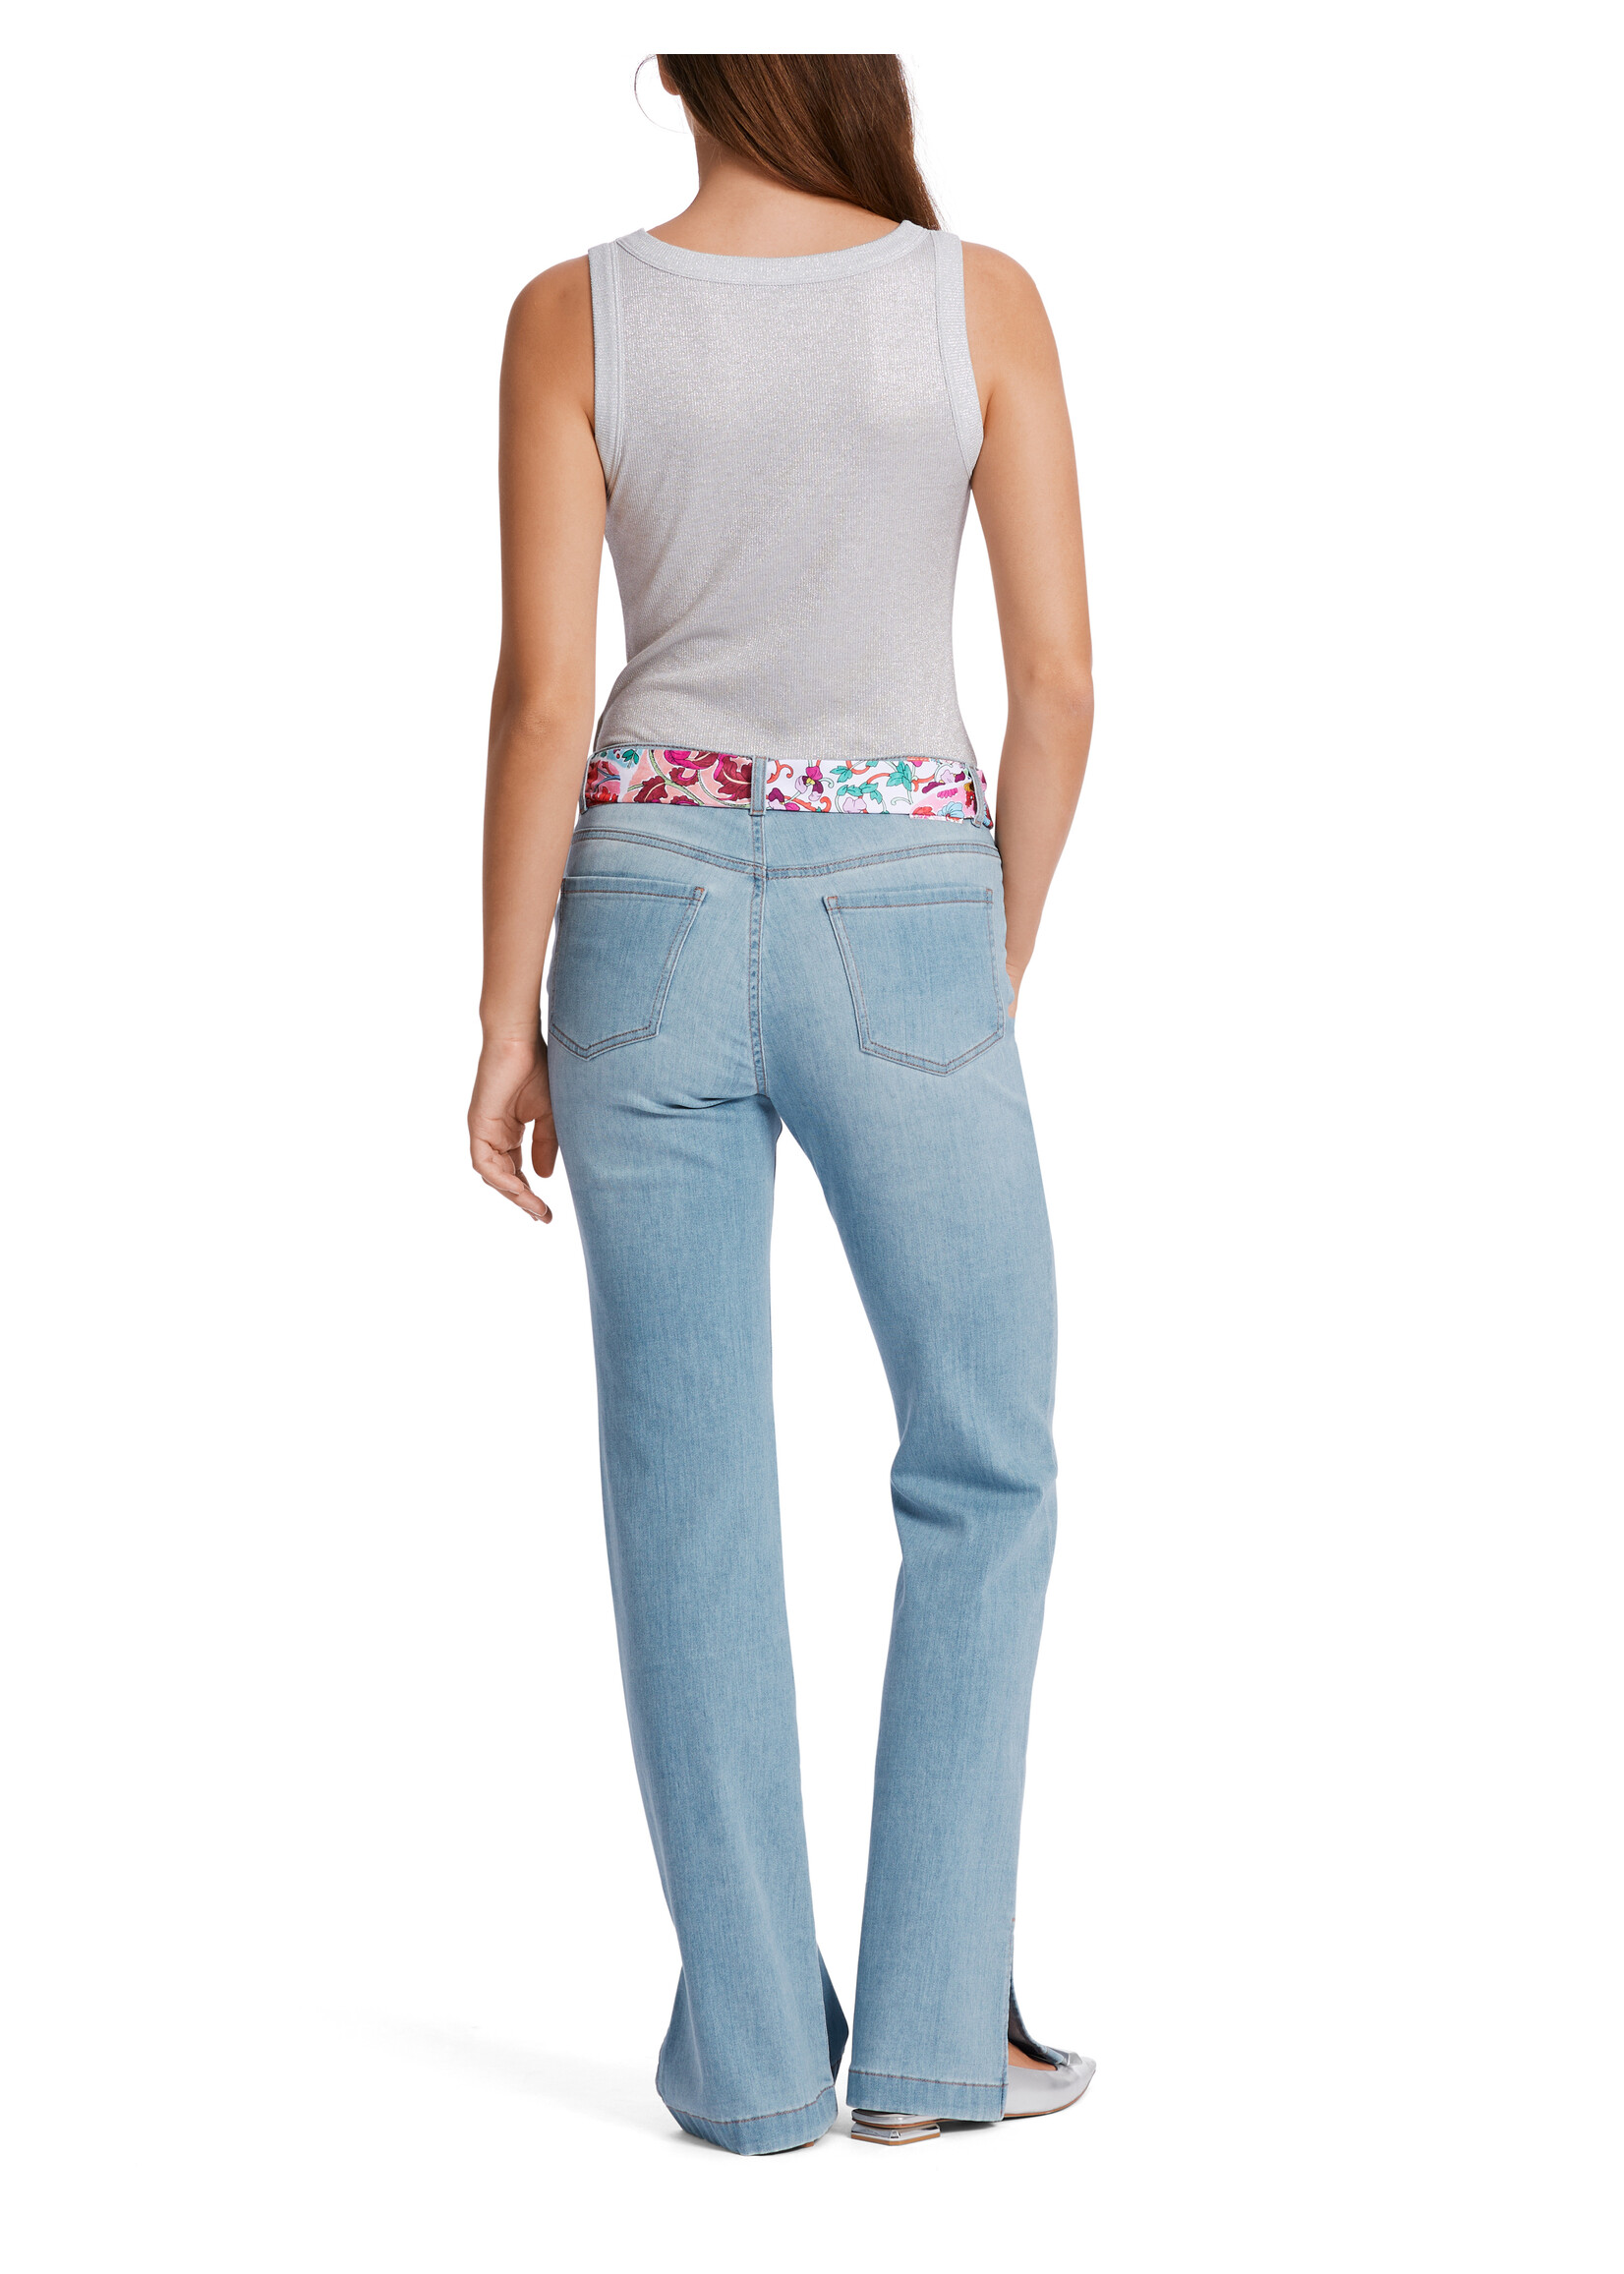 Marccain Pants Jeans WP 82.16 D51 351